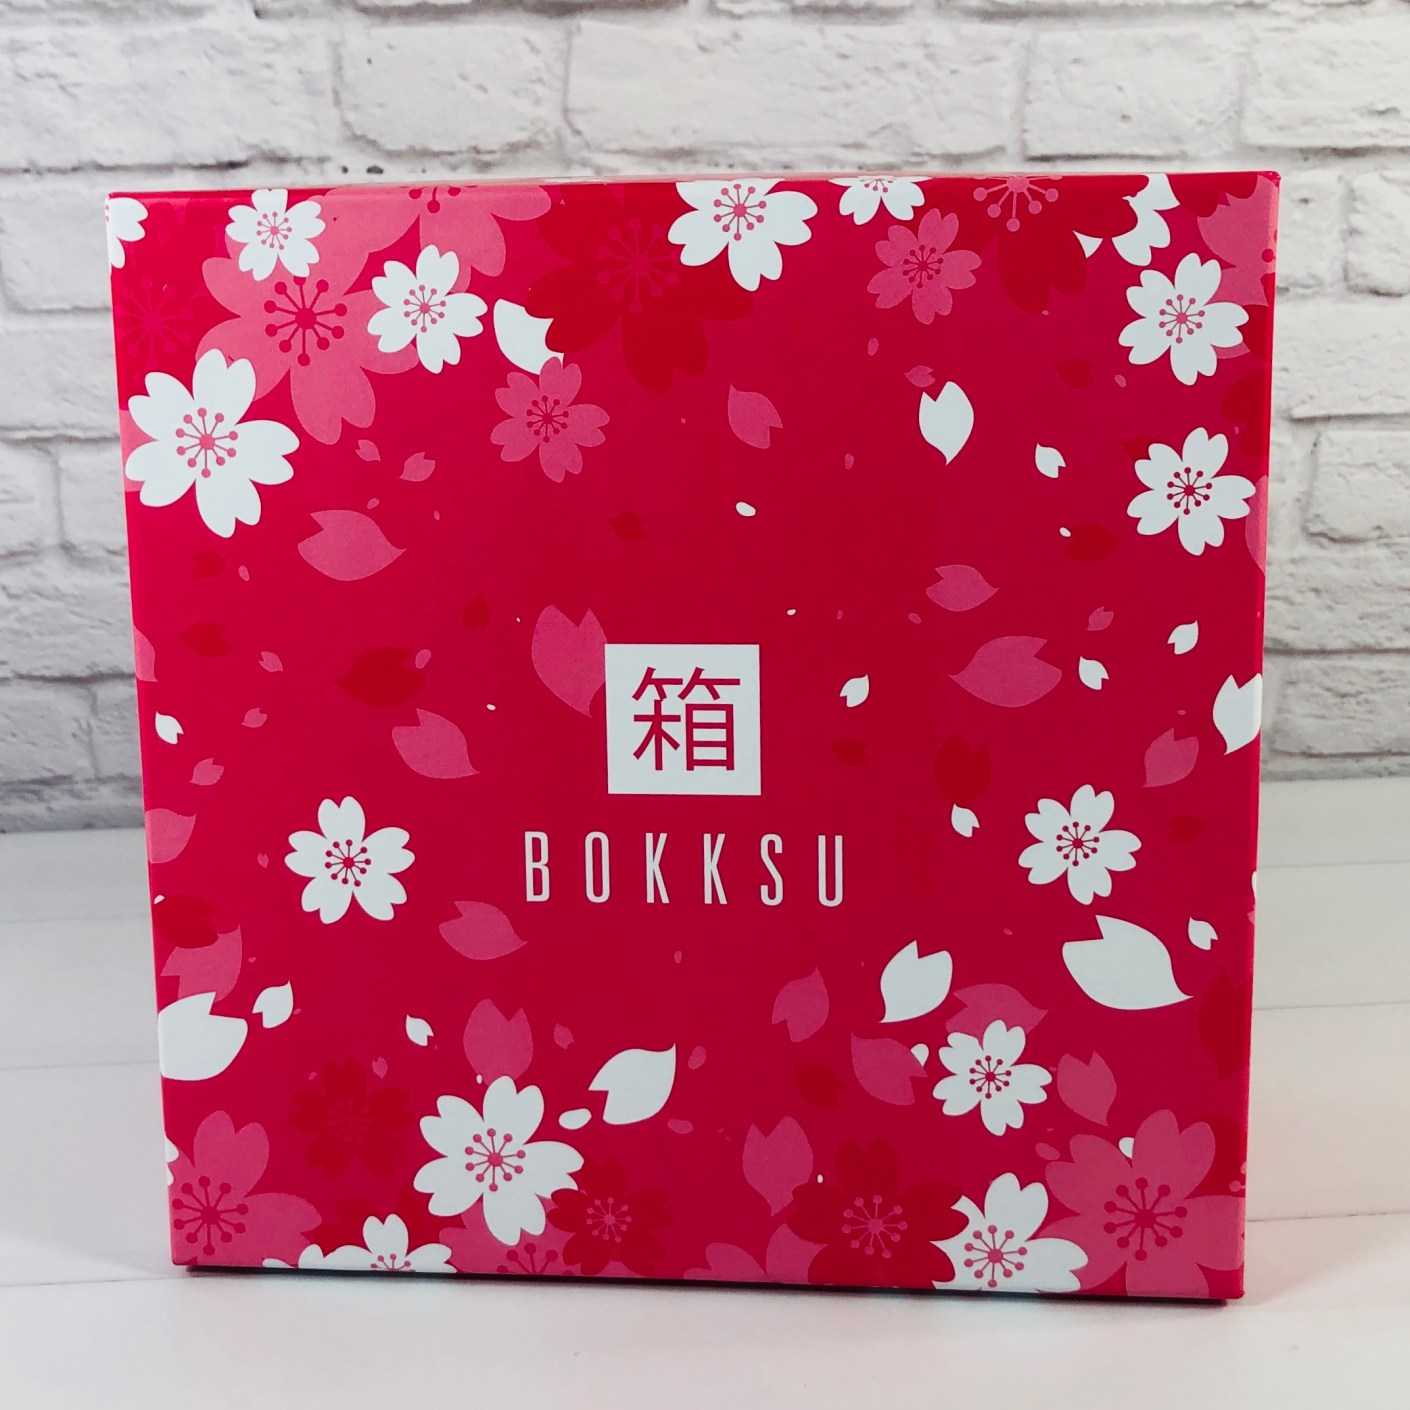 Bokksu May 2020 Subscription Box Review + Coupon Hello Subscription